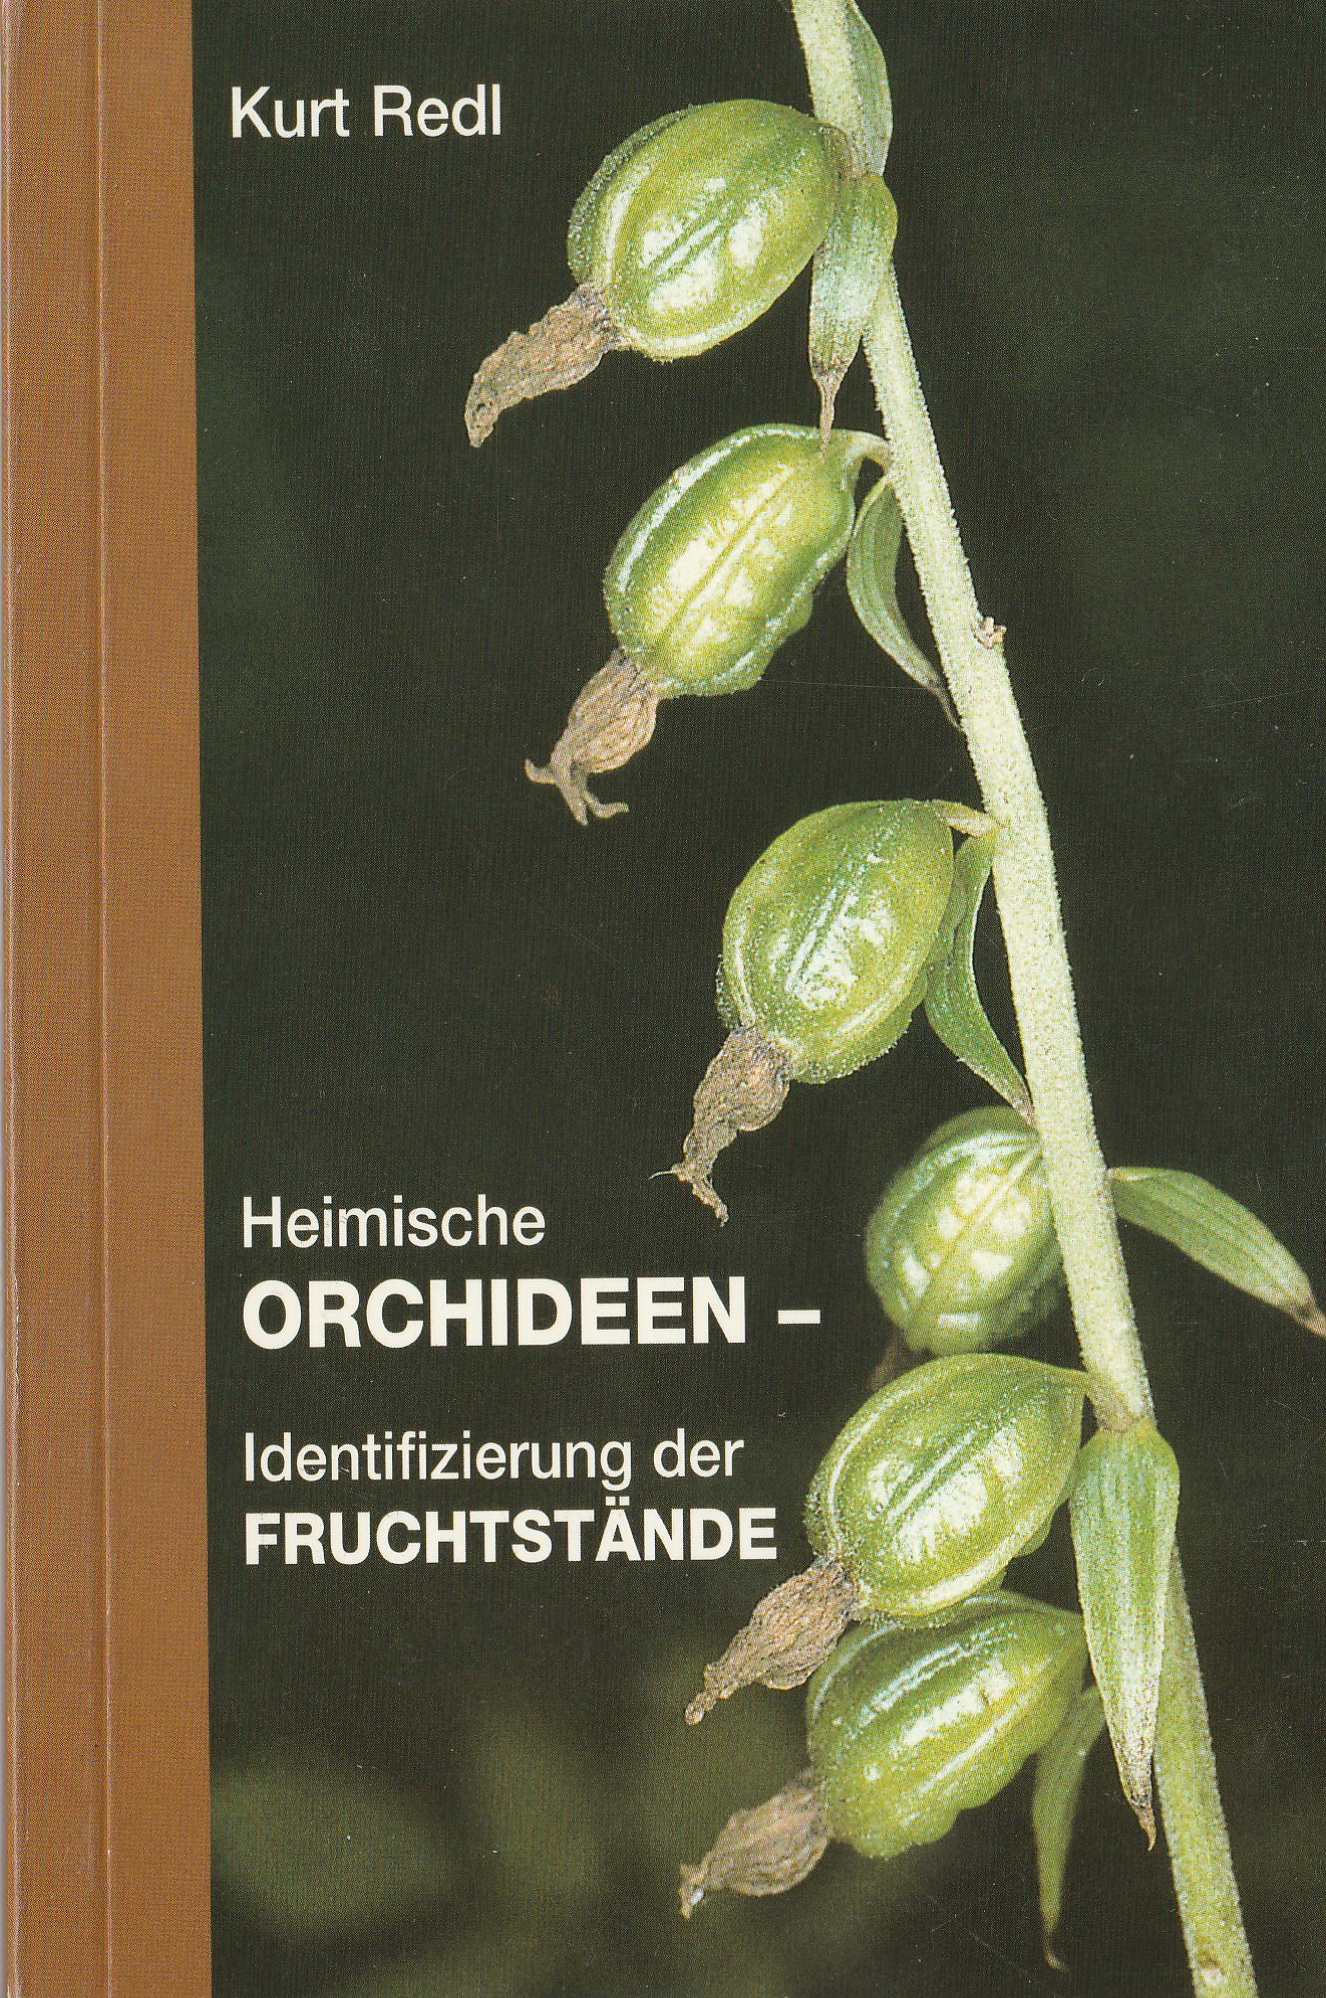 Cover Kurt Redl Orchideen Fruchtstände.jpg